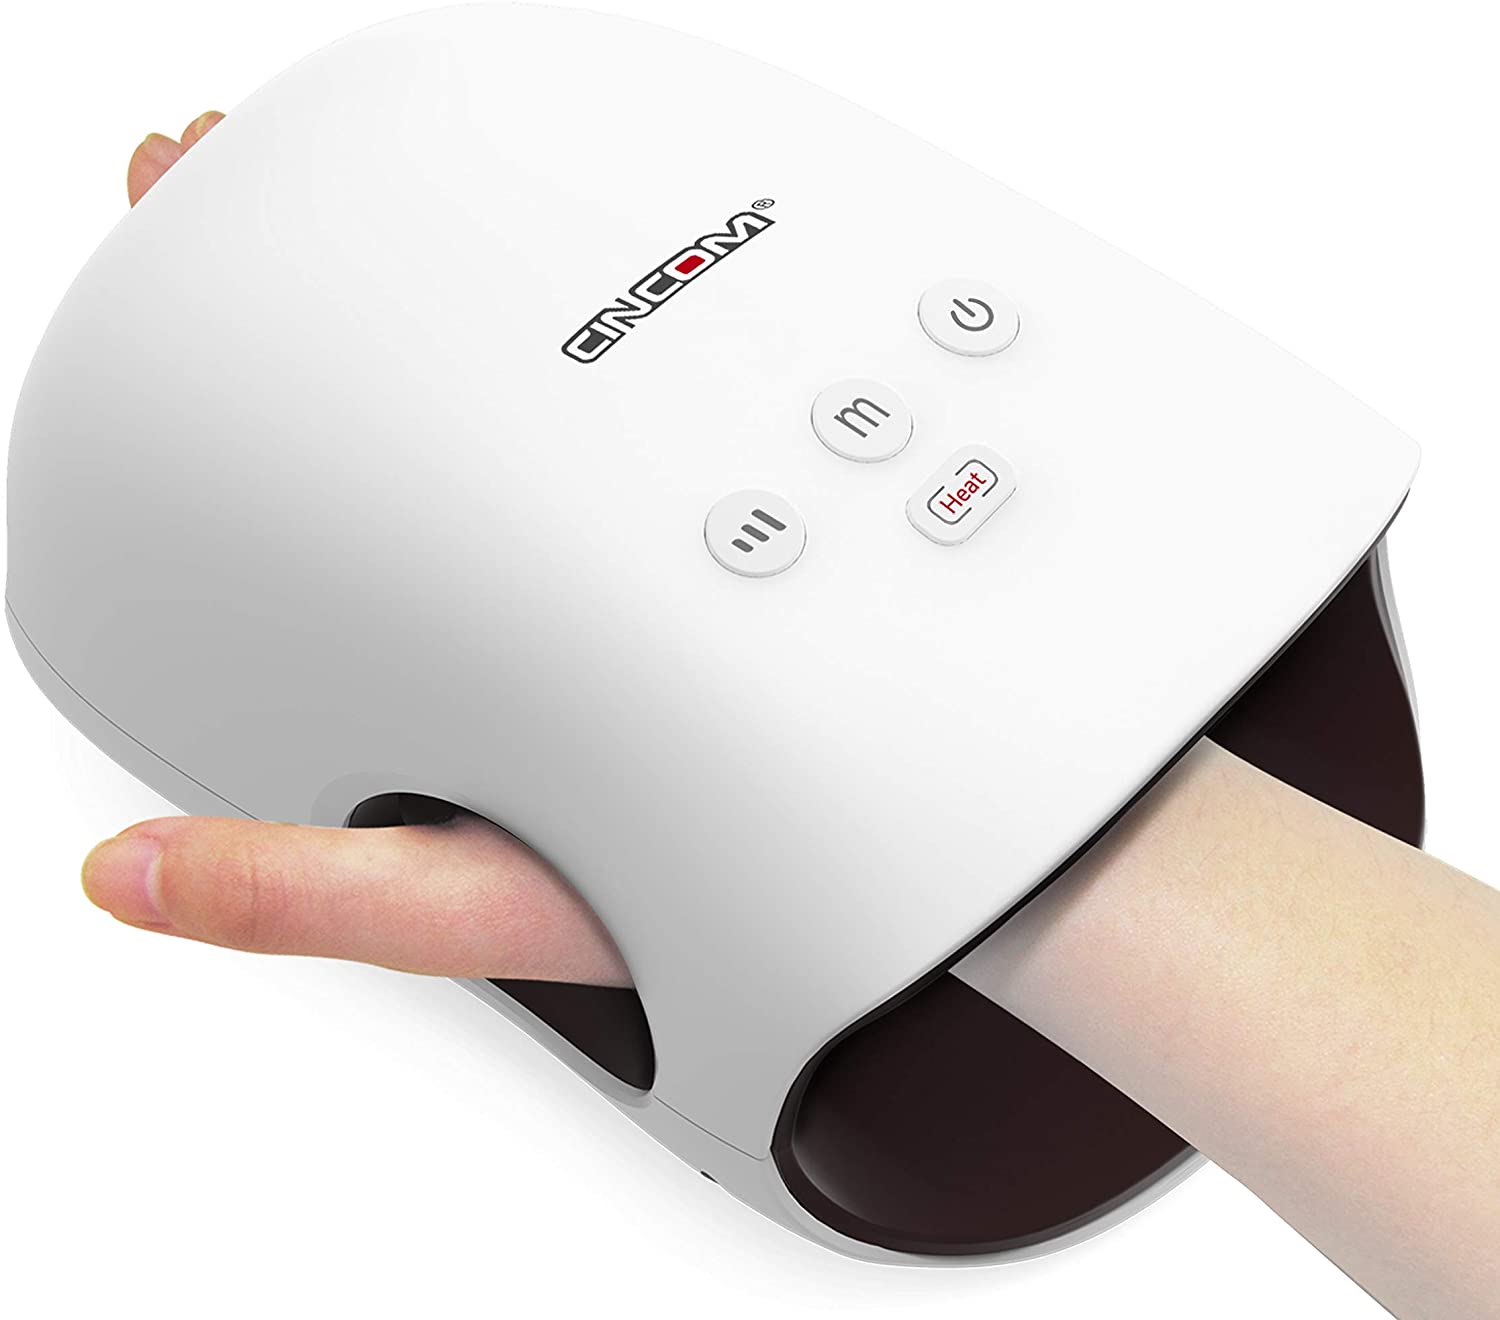 Cincom hand massager rechargeable